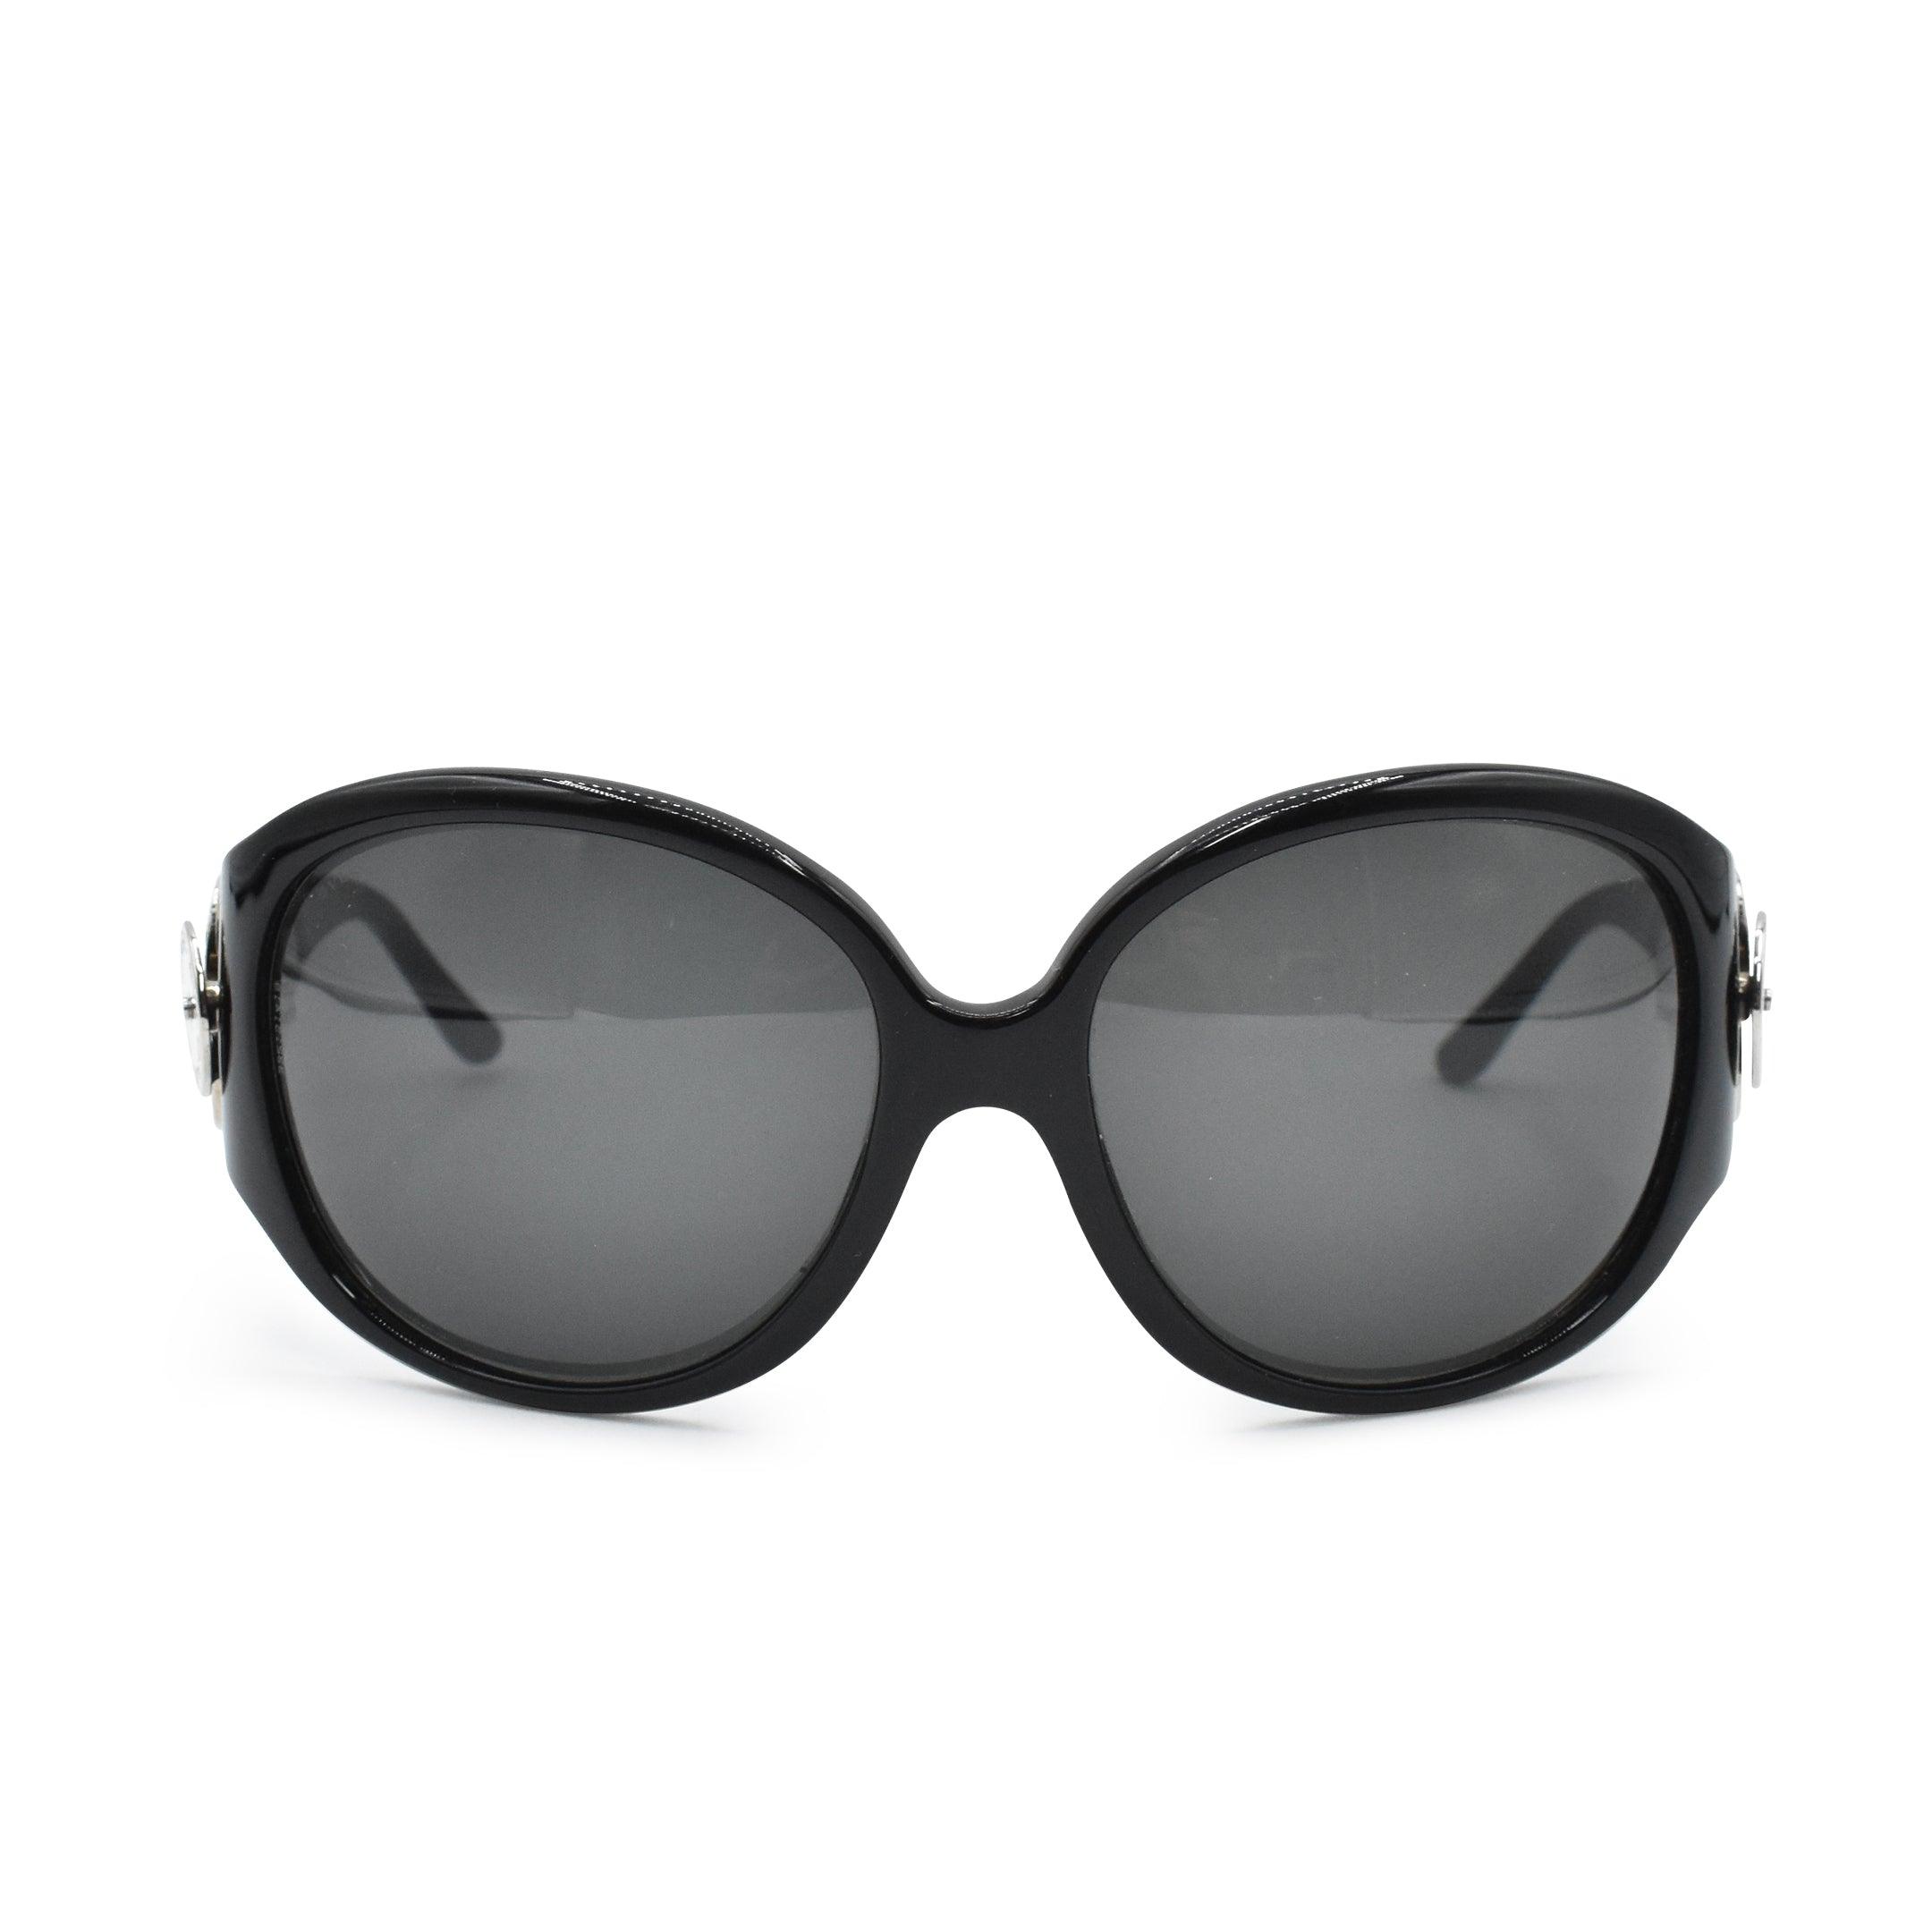 Bvlgari Round Sunglasses - Fashionably Yours